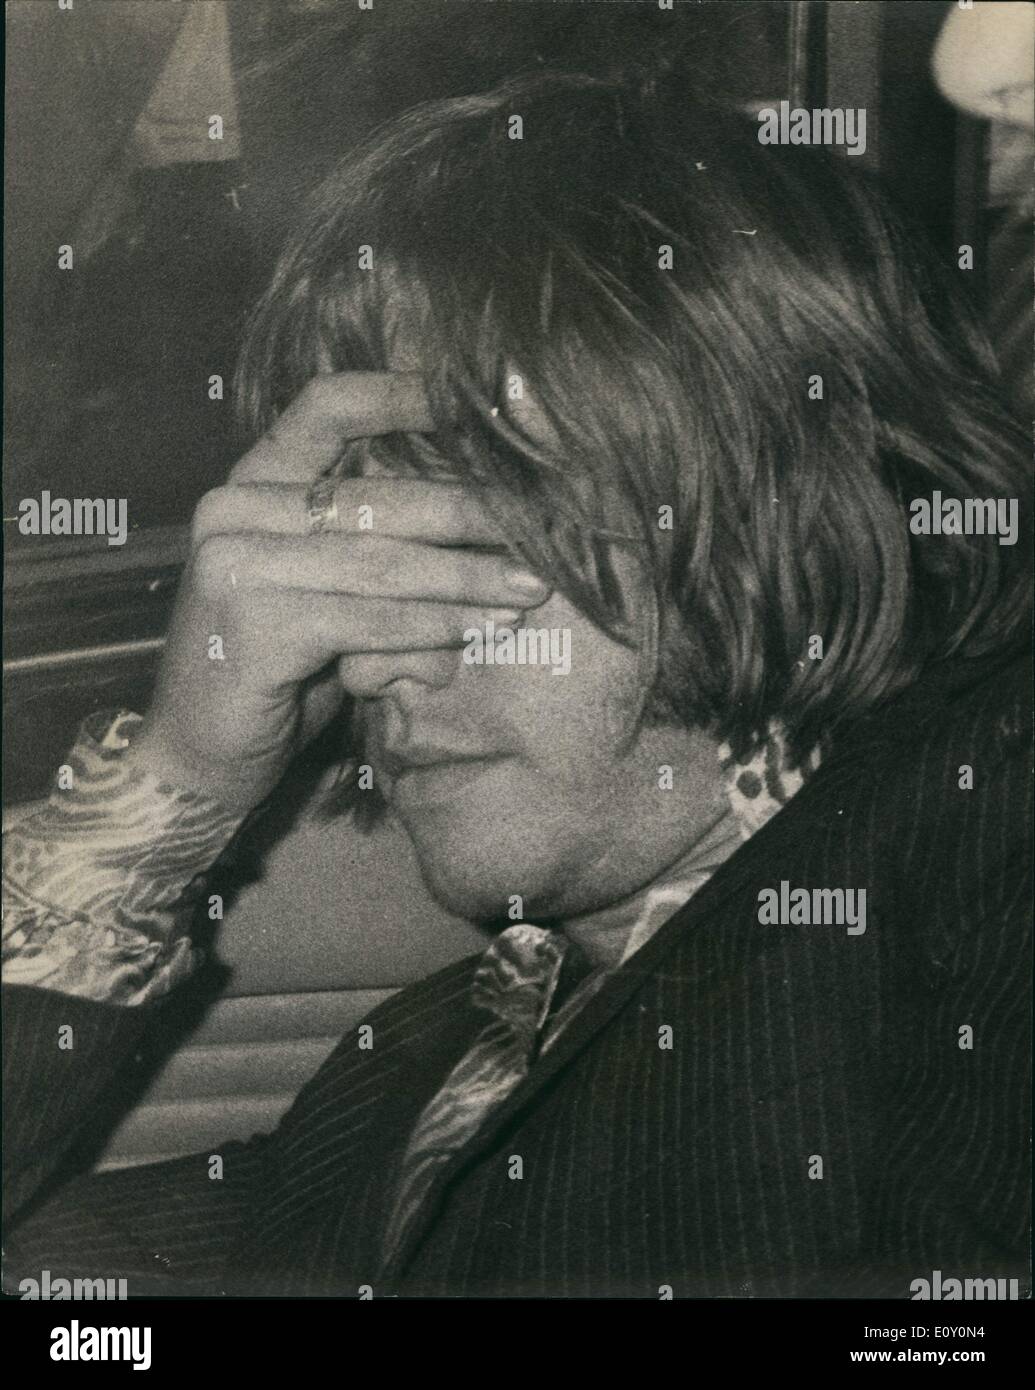 Mai 05, 1968 - Rolling Stone arrêté. Brian Jones Face à l'accusation : Pop Star Brian Jones des Rolling Stones, a été arrêté à son Chelsea télévision aujourd'hui et emmené à la police locale et accusé de possession d'une quantité de cannabis en vertu de la Loi sur les drogues dangereuses. Il a comparu en cour à Marlborough Street plus tard. Quatre policiers, dont une femme détective, est allé à son appartement juste après 7 heures du matin qu'ils avaient un mandat de perquisition et d'après l'inspection de la télévision, a pris une substance aux fins d'essais. Brian Jones était seul dans l'appartement, qui est l'un le troisième étage, lorsque les détectives appelés Banque D'Images